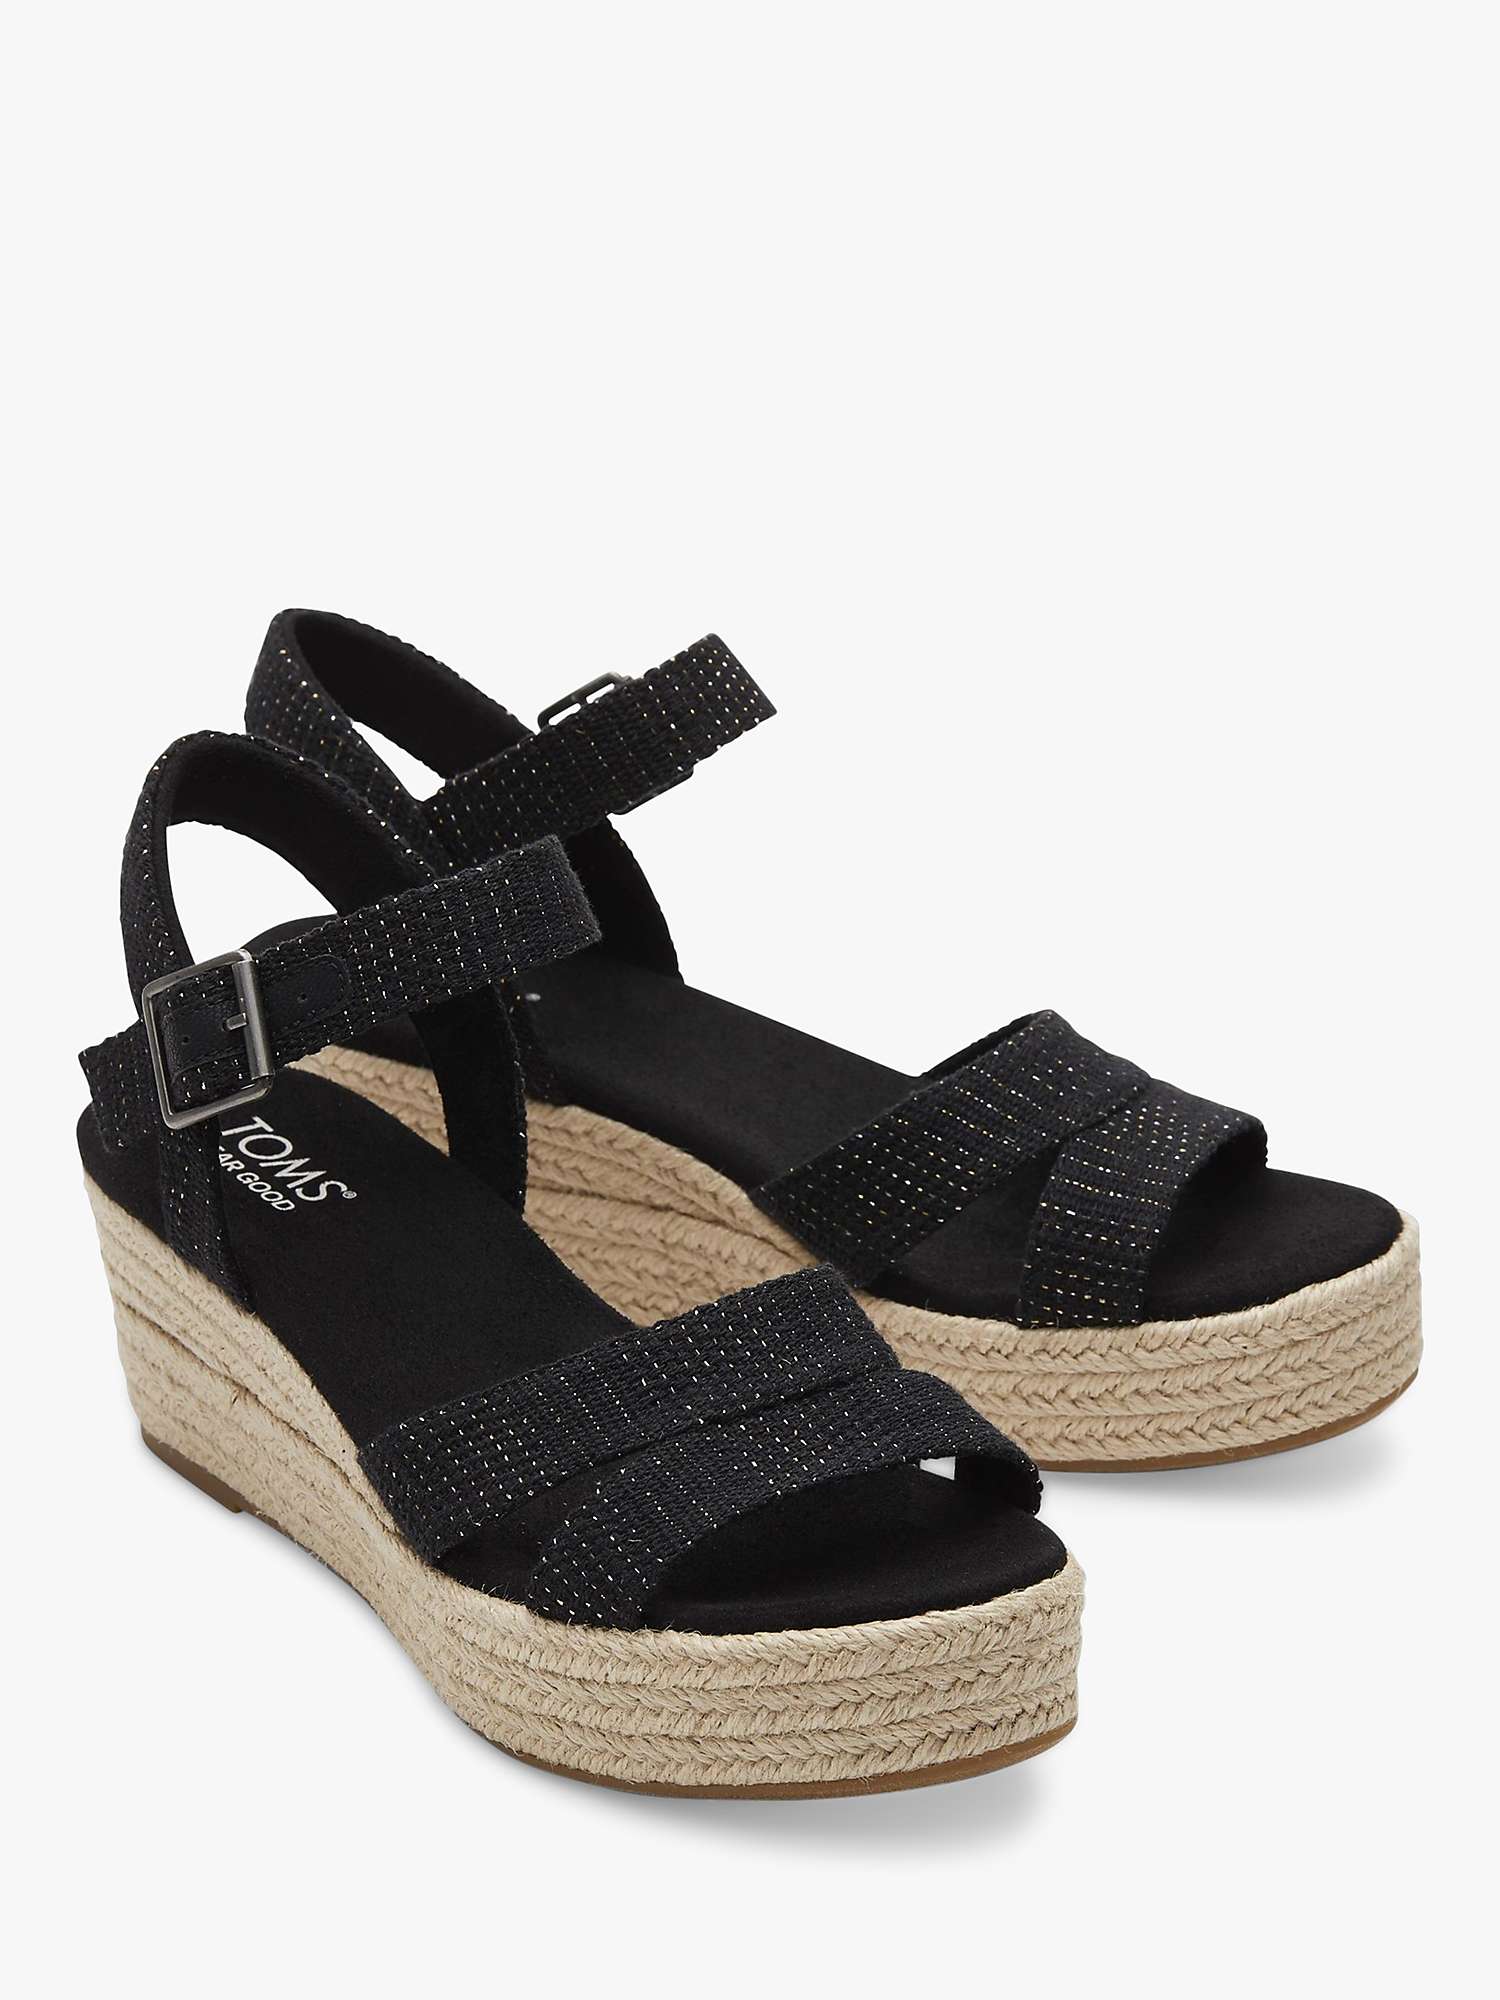 Buy TOMS Audrey Espadrille Wedge Sandals, Black Online at johnlewis.com